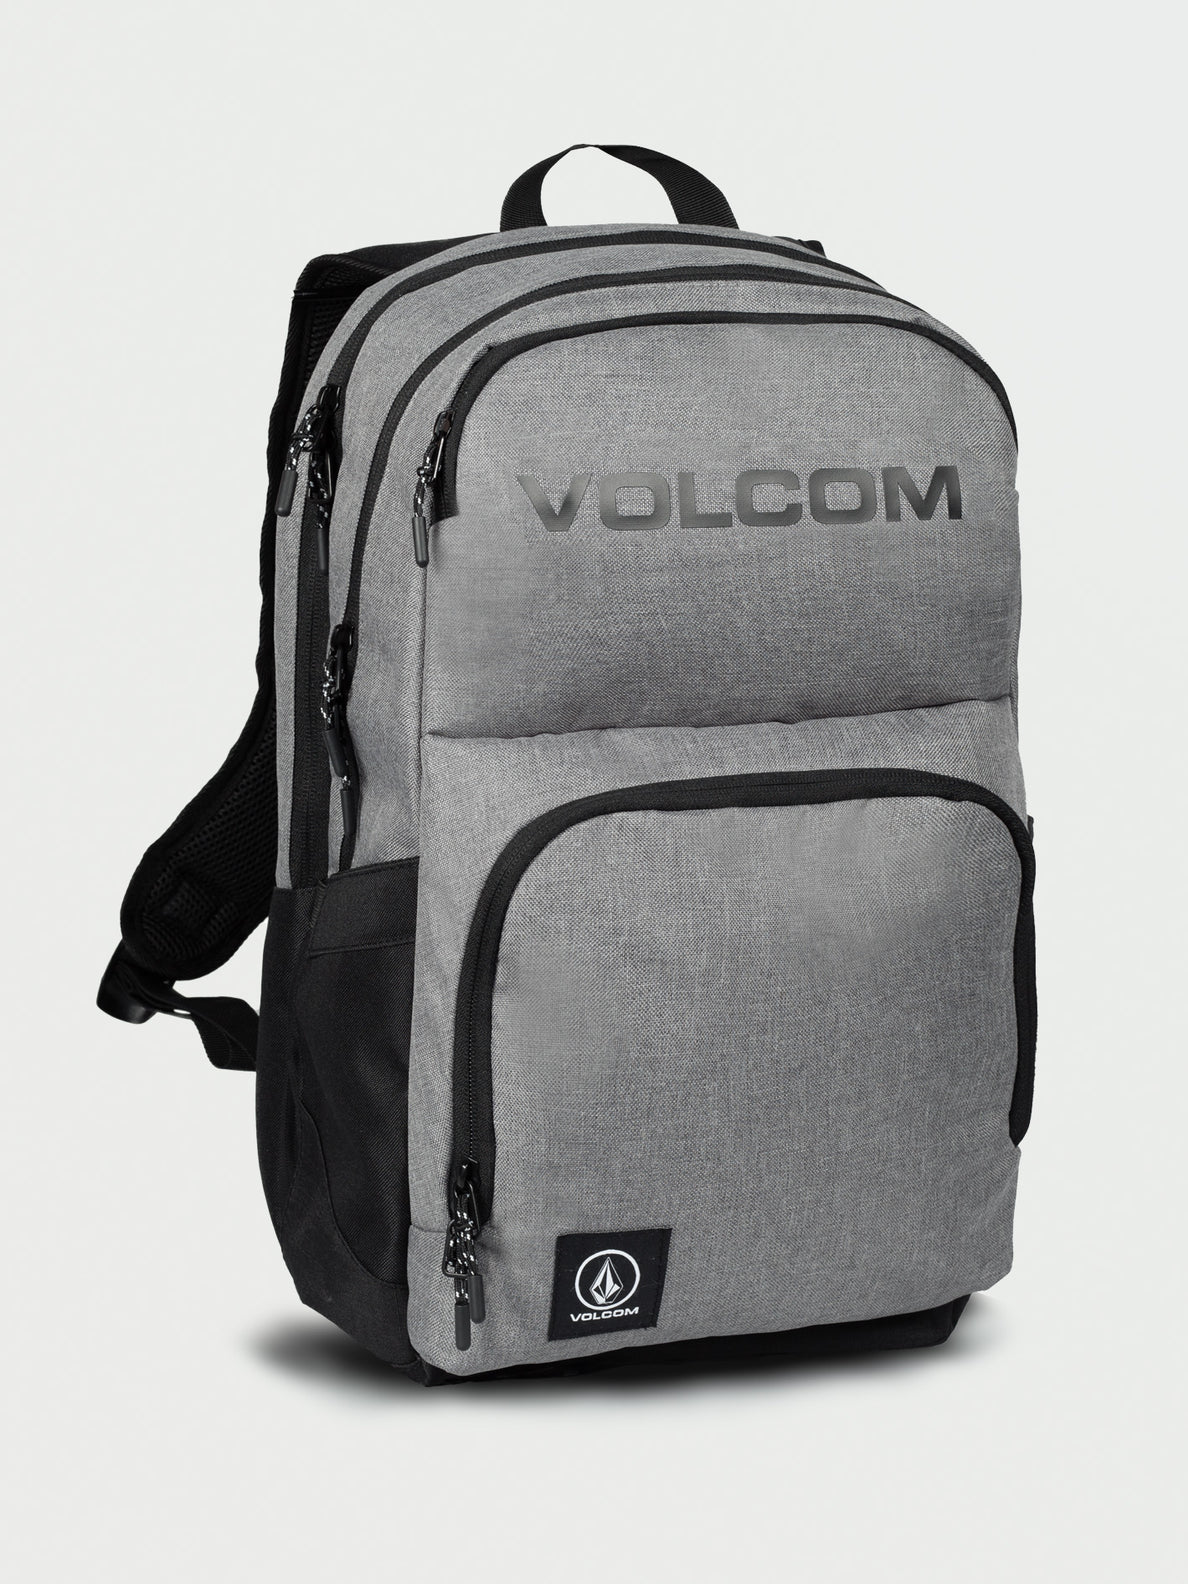 Volcom Roamer 2.0 Backpack - Heather